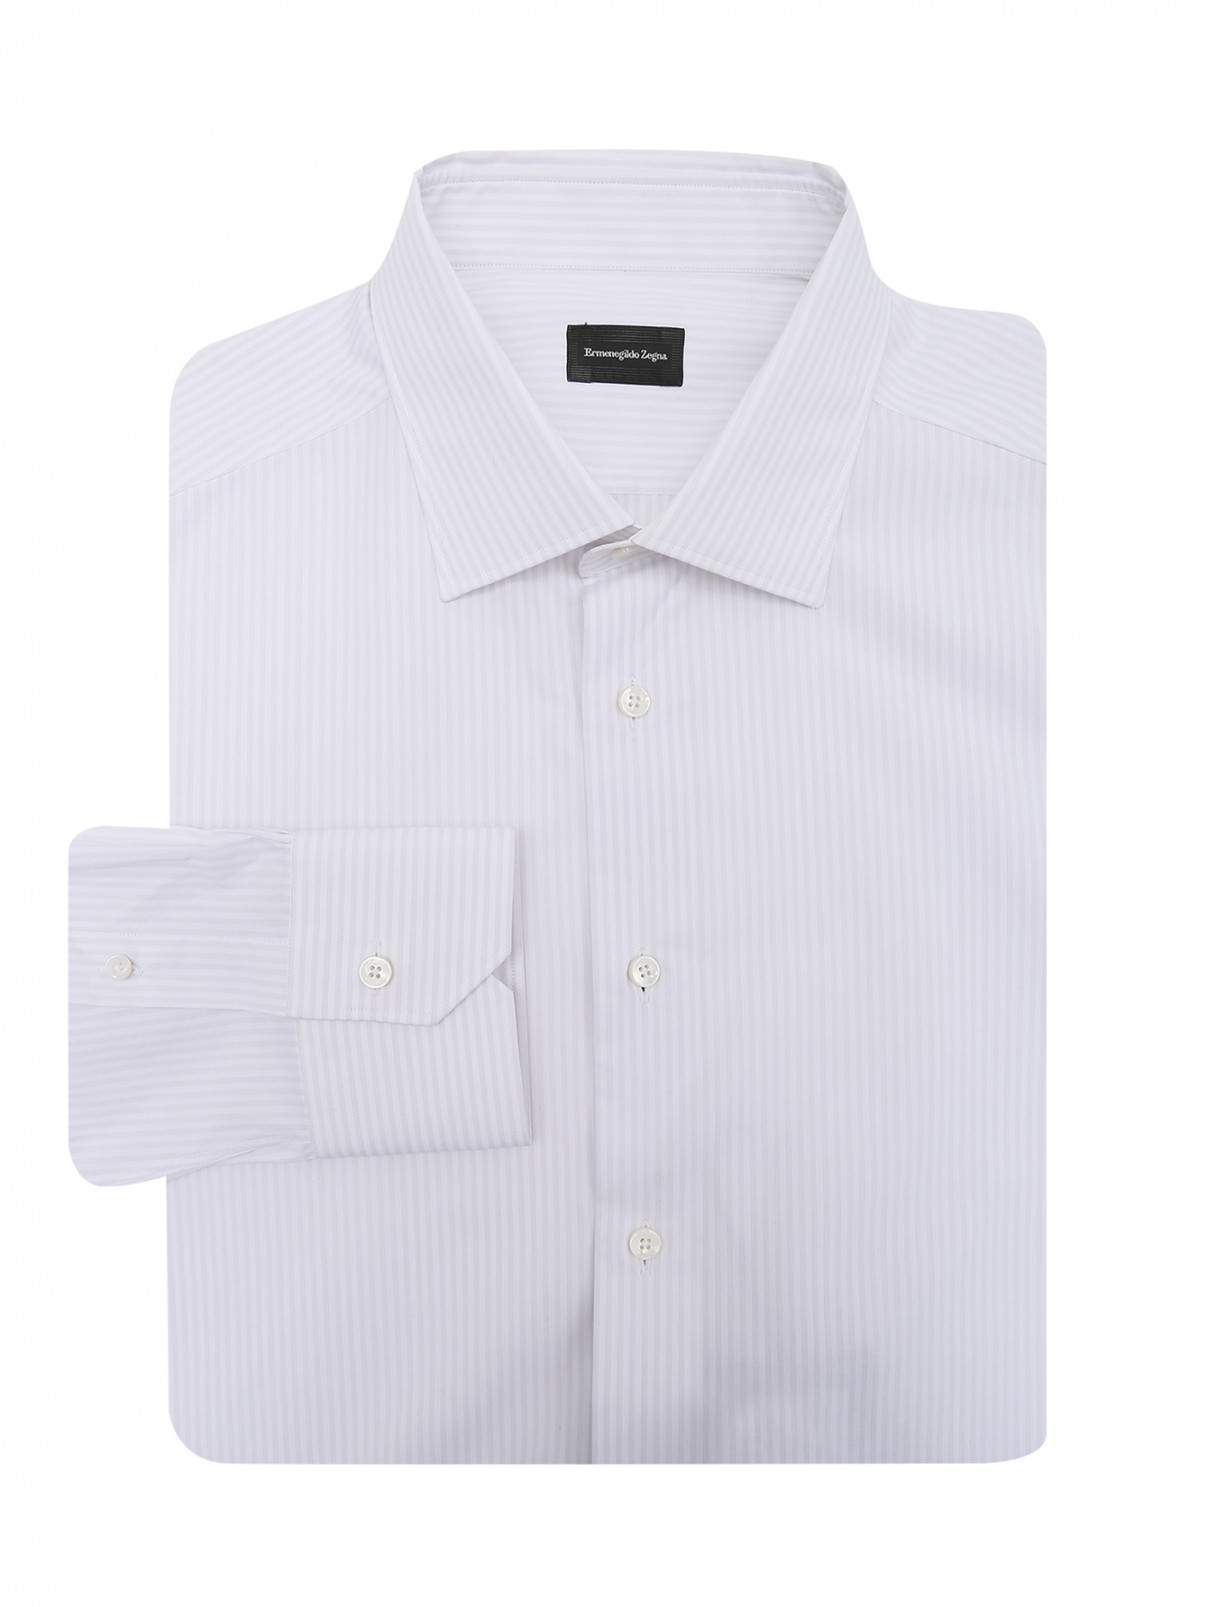 Рубашка из хлопка с узором полоска Ermenegildo Zegna  –  Общий вид  – Цвет:  Узор